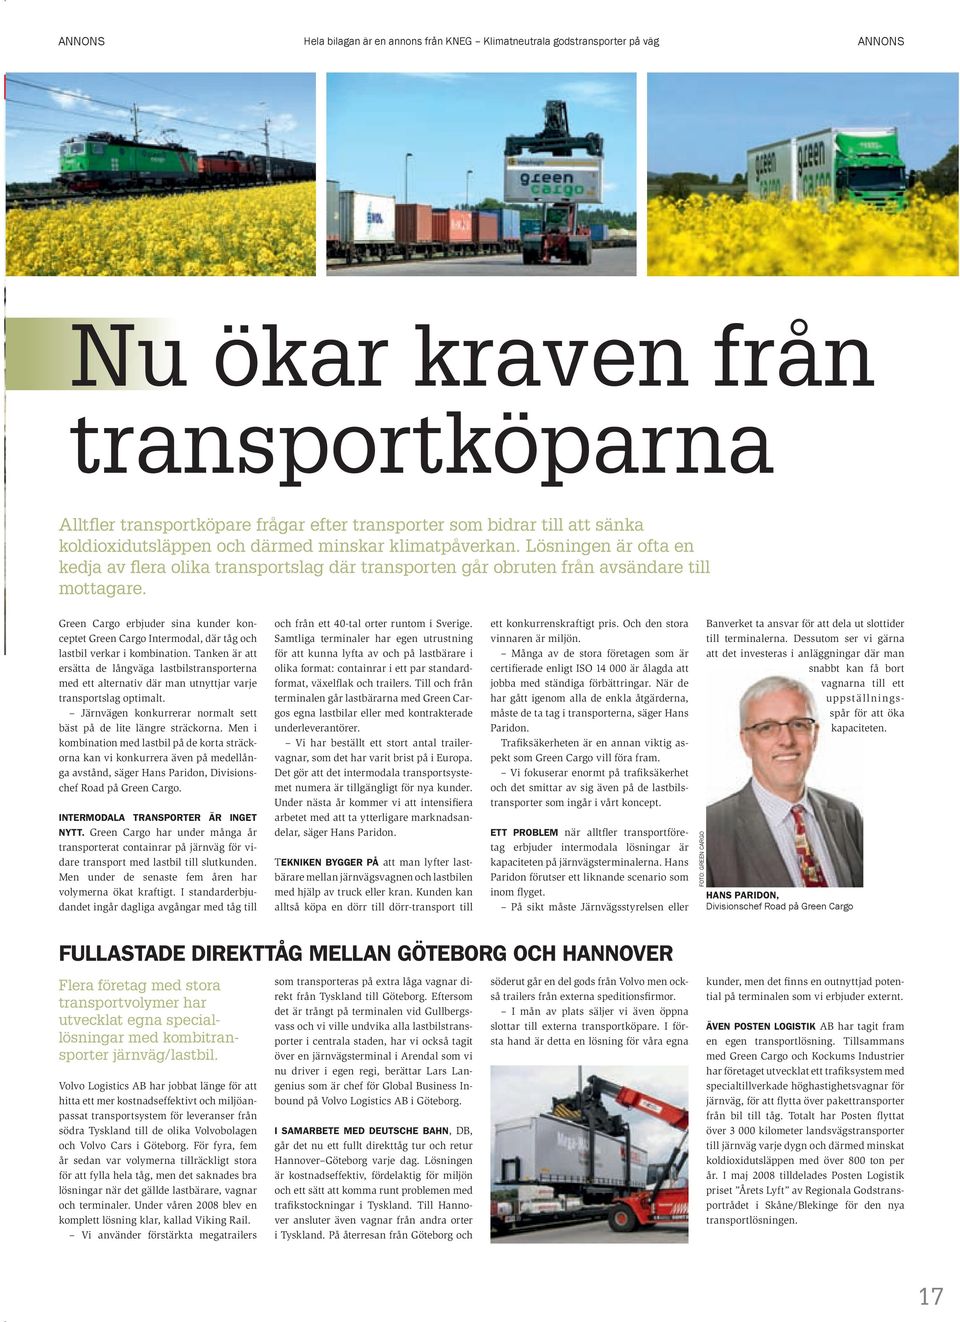 Green Cargo erbjuder sina kunder konceptet Green Cargo Intermodal, där tåg och lastbil verkar i kombination.